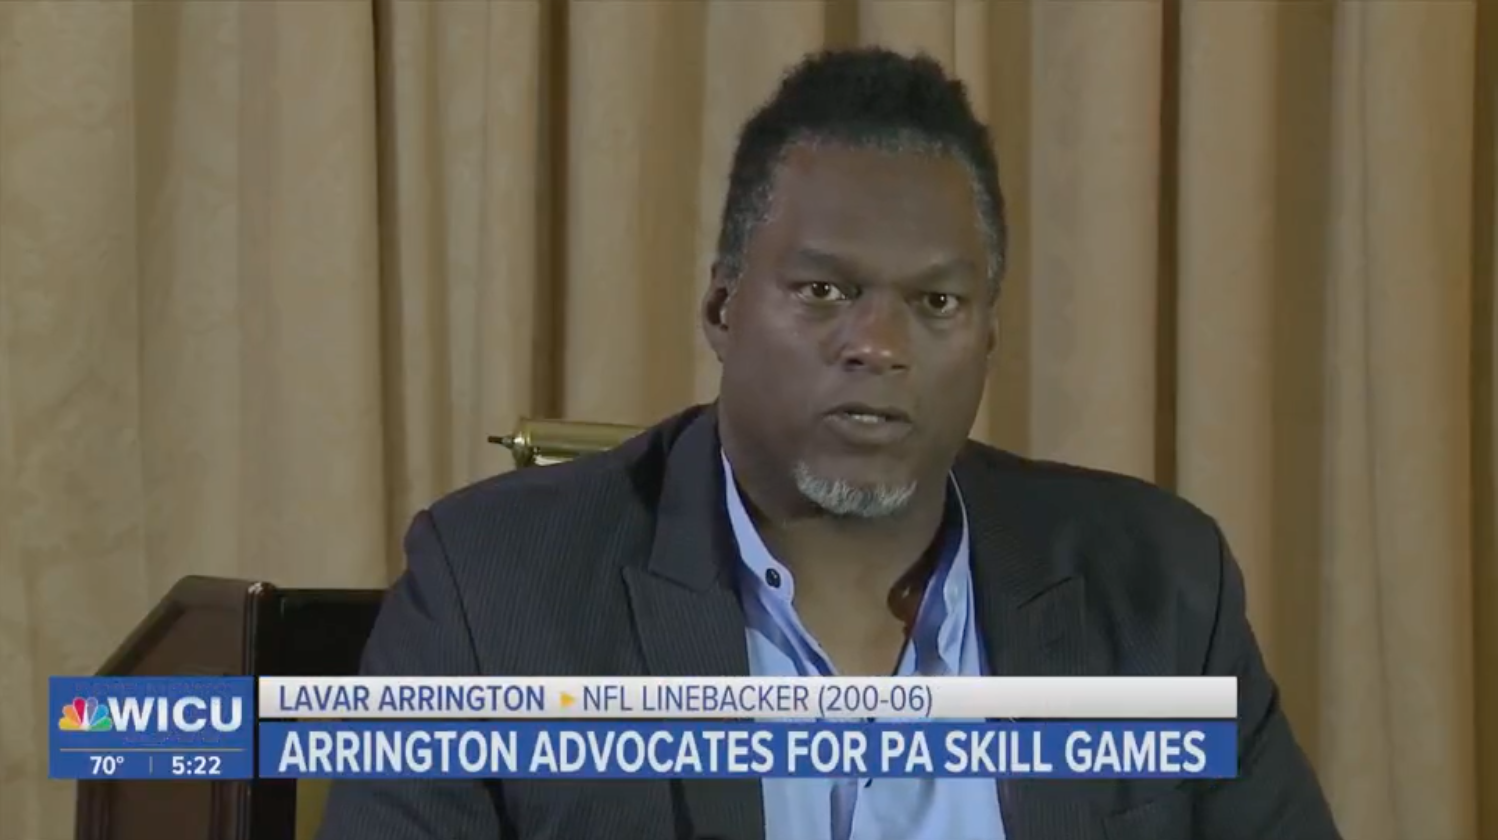 LaVar Arrington advocates for PA Skill Games